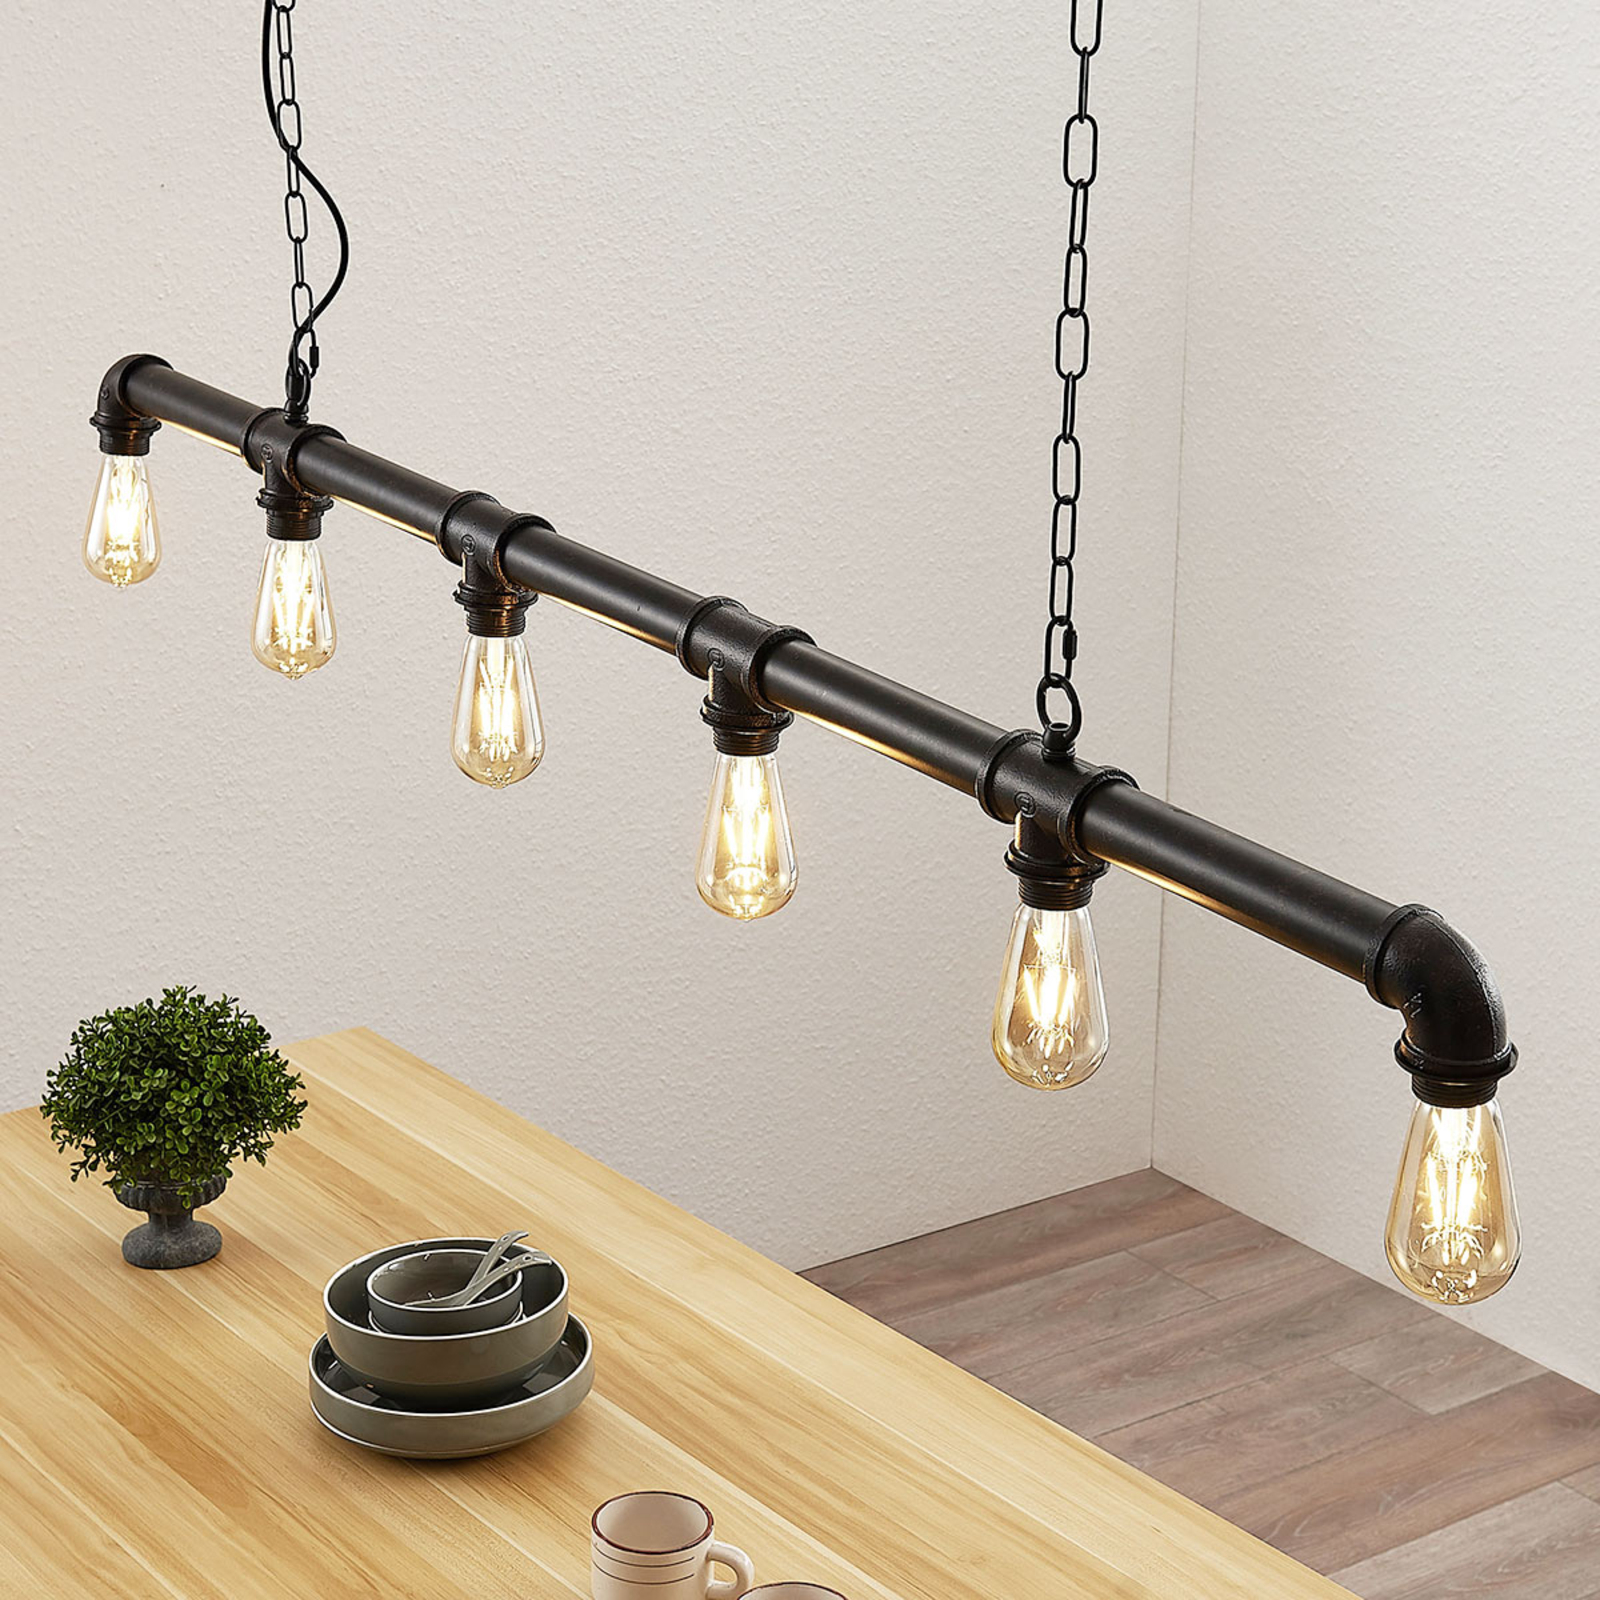 Balk hanglamp Josip in industriële | Lampen24.be